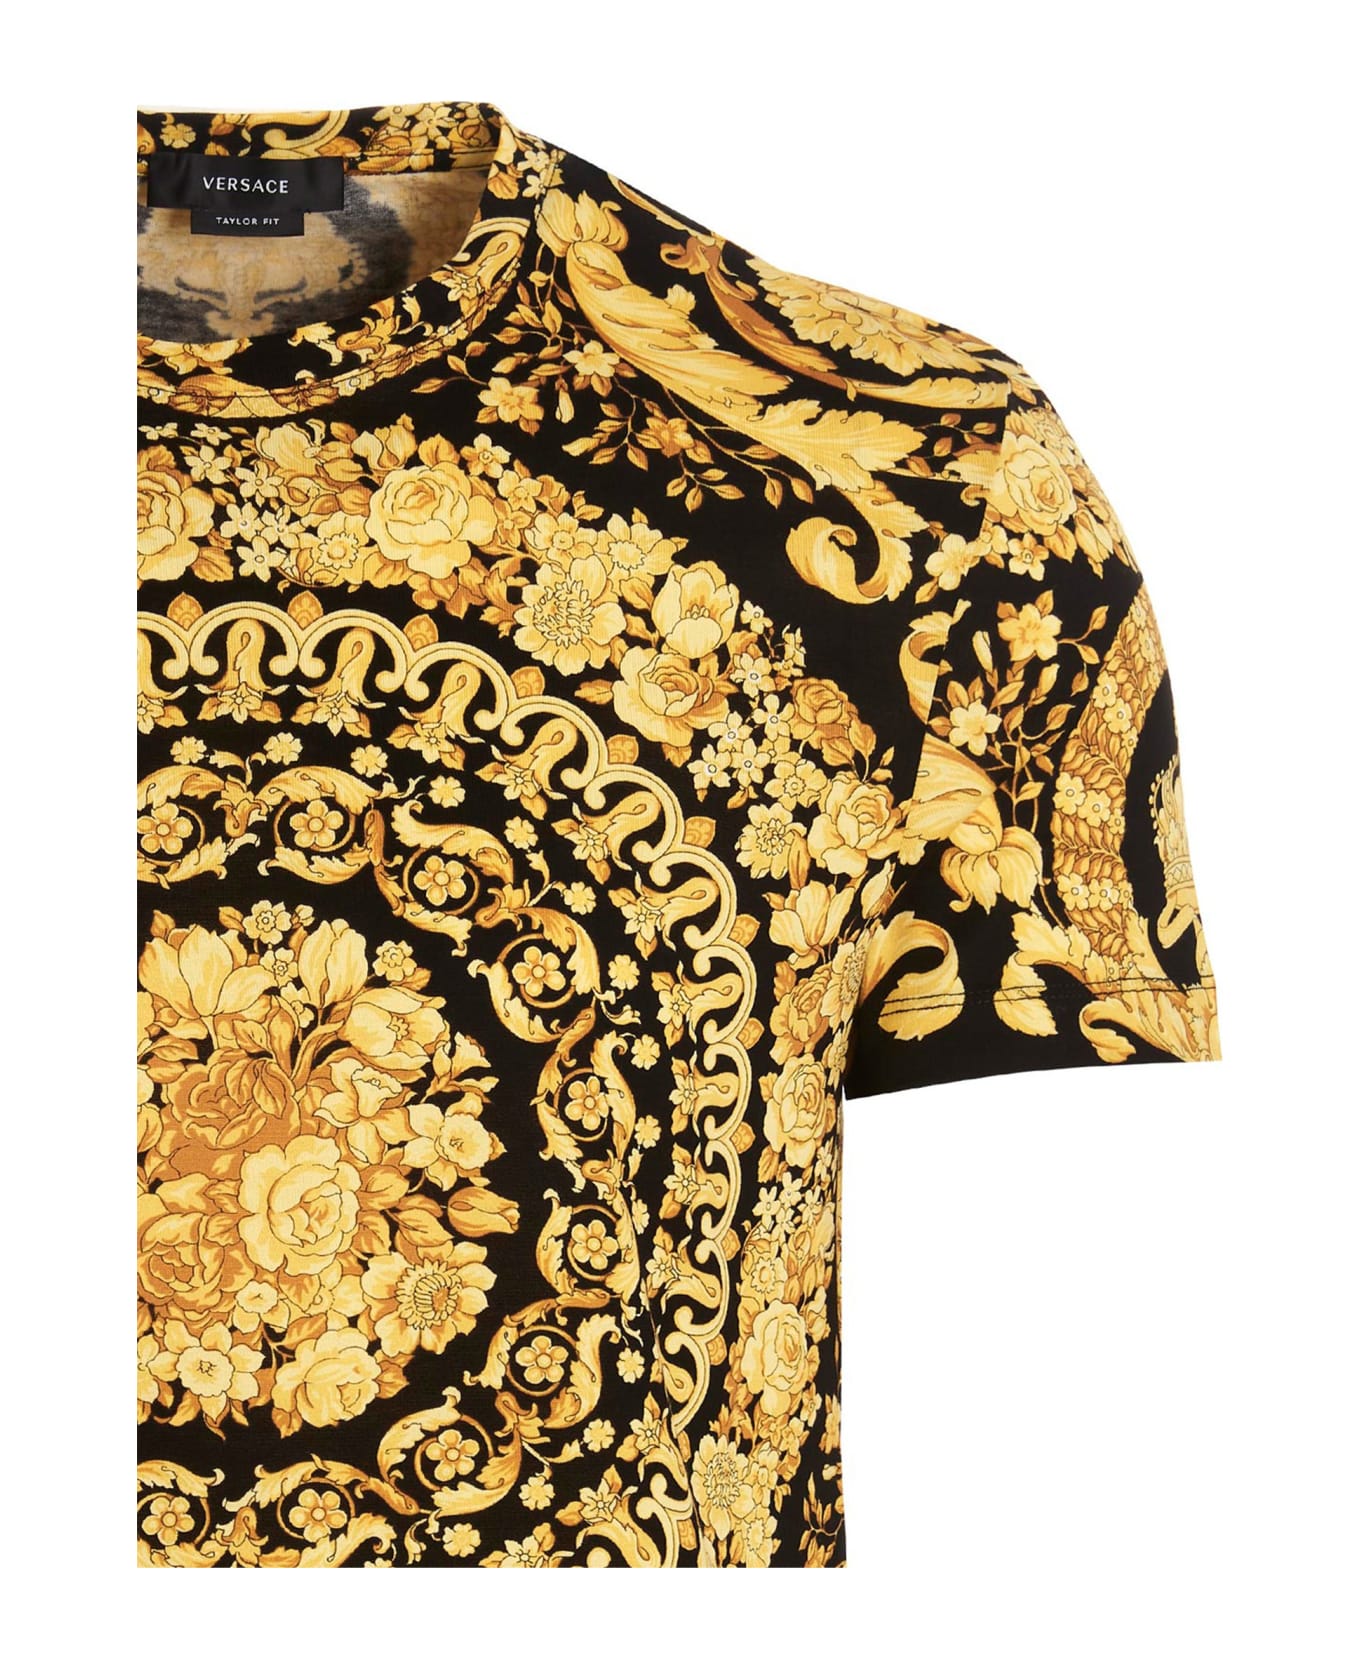 Versace Baroque T-shirt - Gold